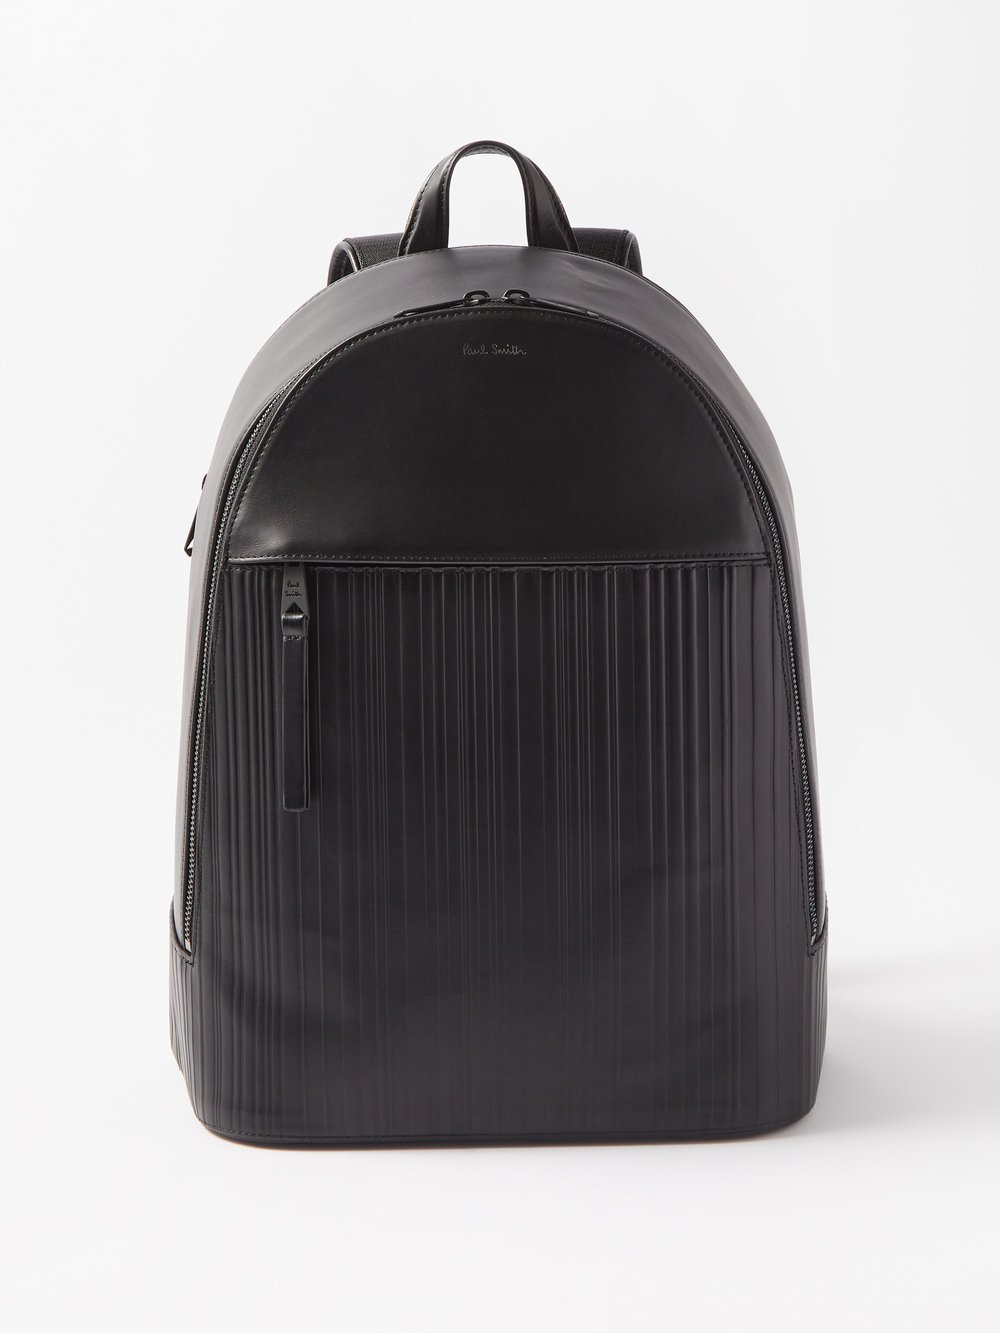 Кожаный рюкзак с тиснением signature stripe Paul Smith, черный футболка paul smith basic черный